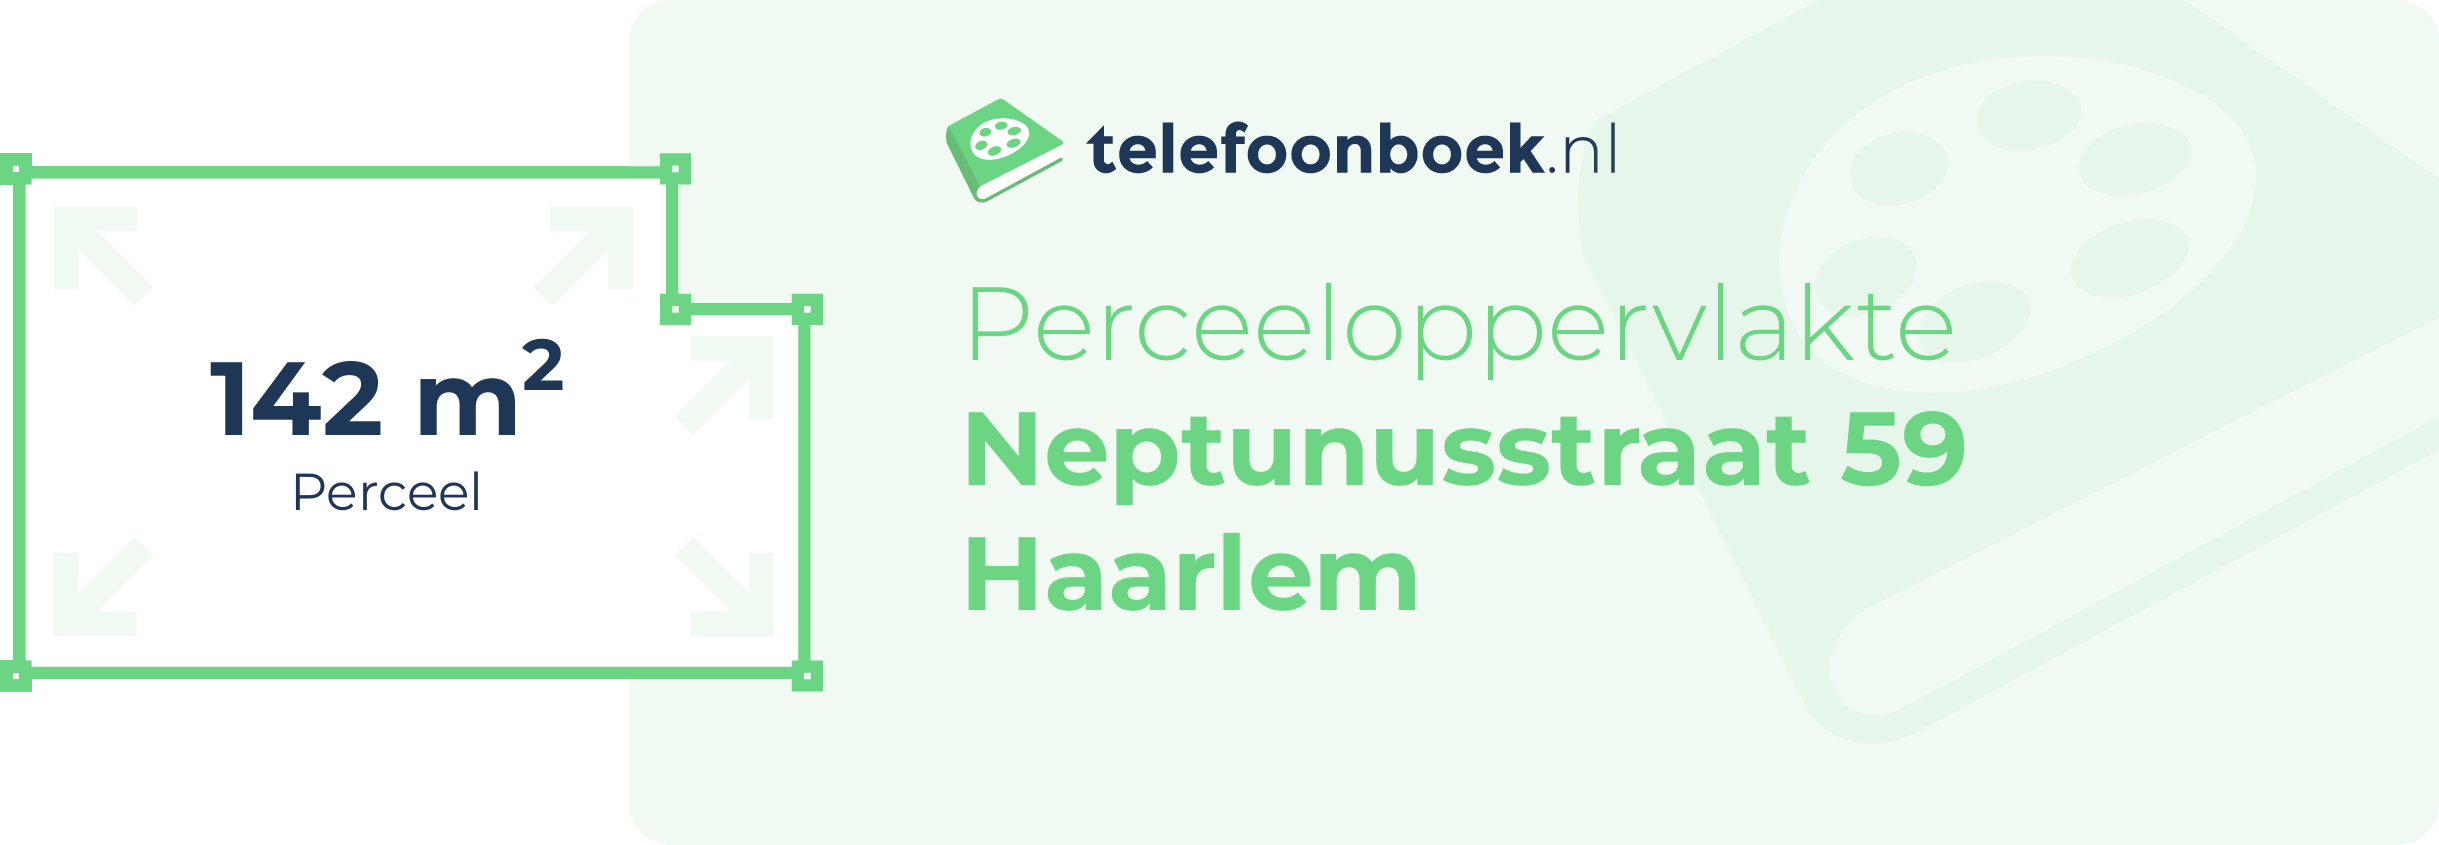 Perceeloppervlakte Neptunusstraat 59 Haarlem